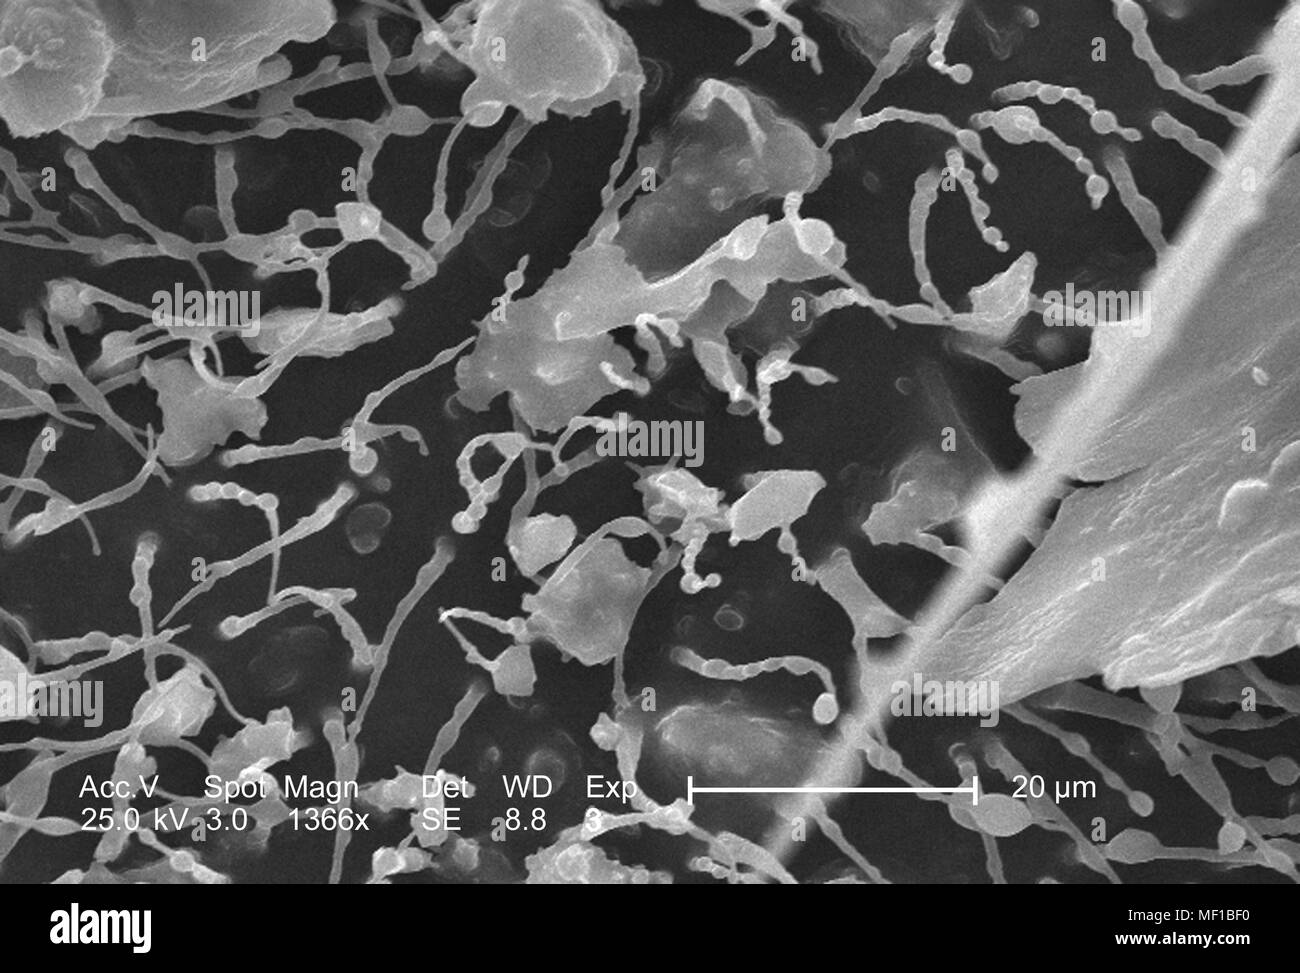 I peli sensoriali (setae) coprendo una libellula chitinous esoscheletro, raffigurato nel 1366x di scansione ingrandita al microscopio elettronico (SEM) immagine, 2005. Immagine cortesia di centri per il controllo delle malattie (CDC) / Janice Haney Carr, Connie fiori. () Foto Stock